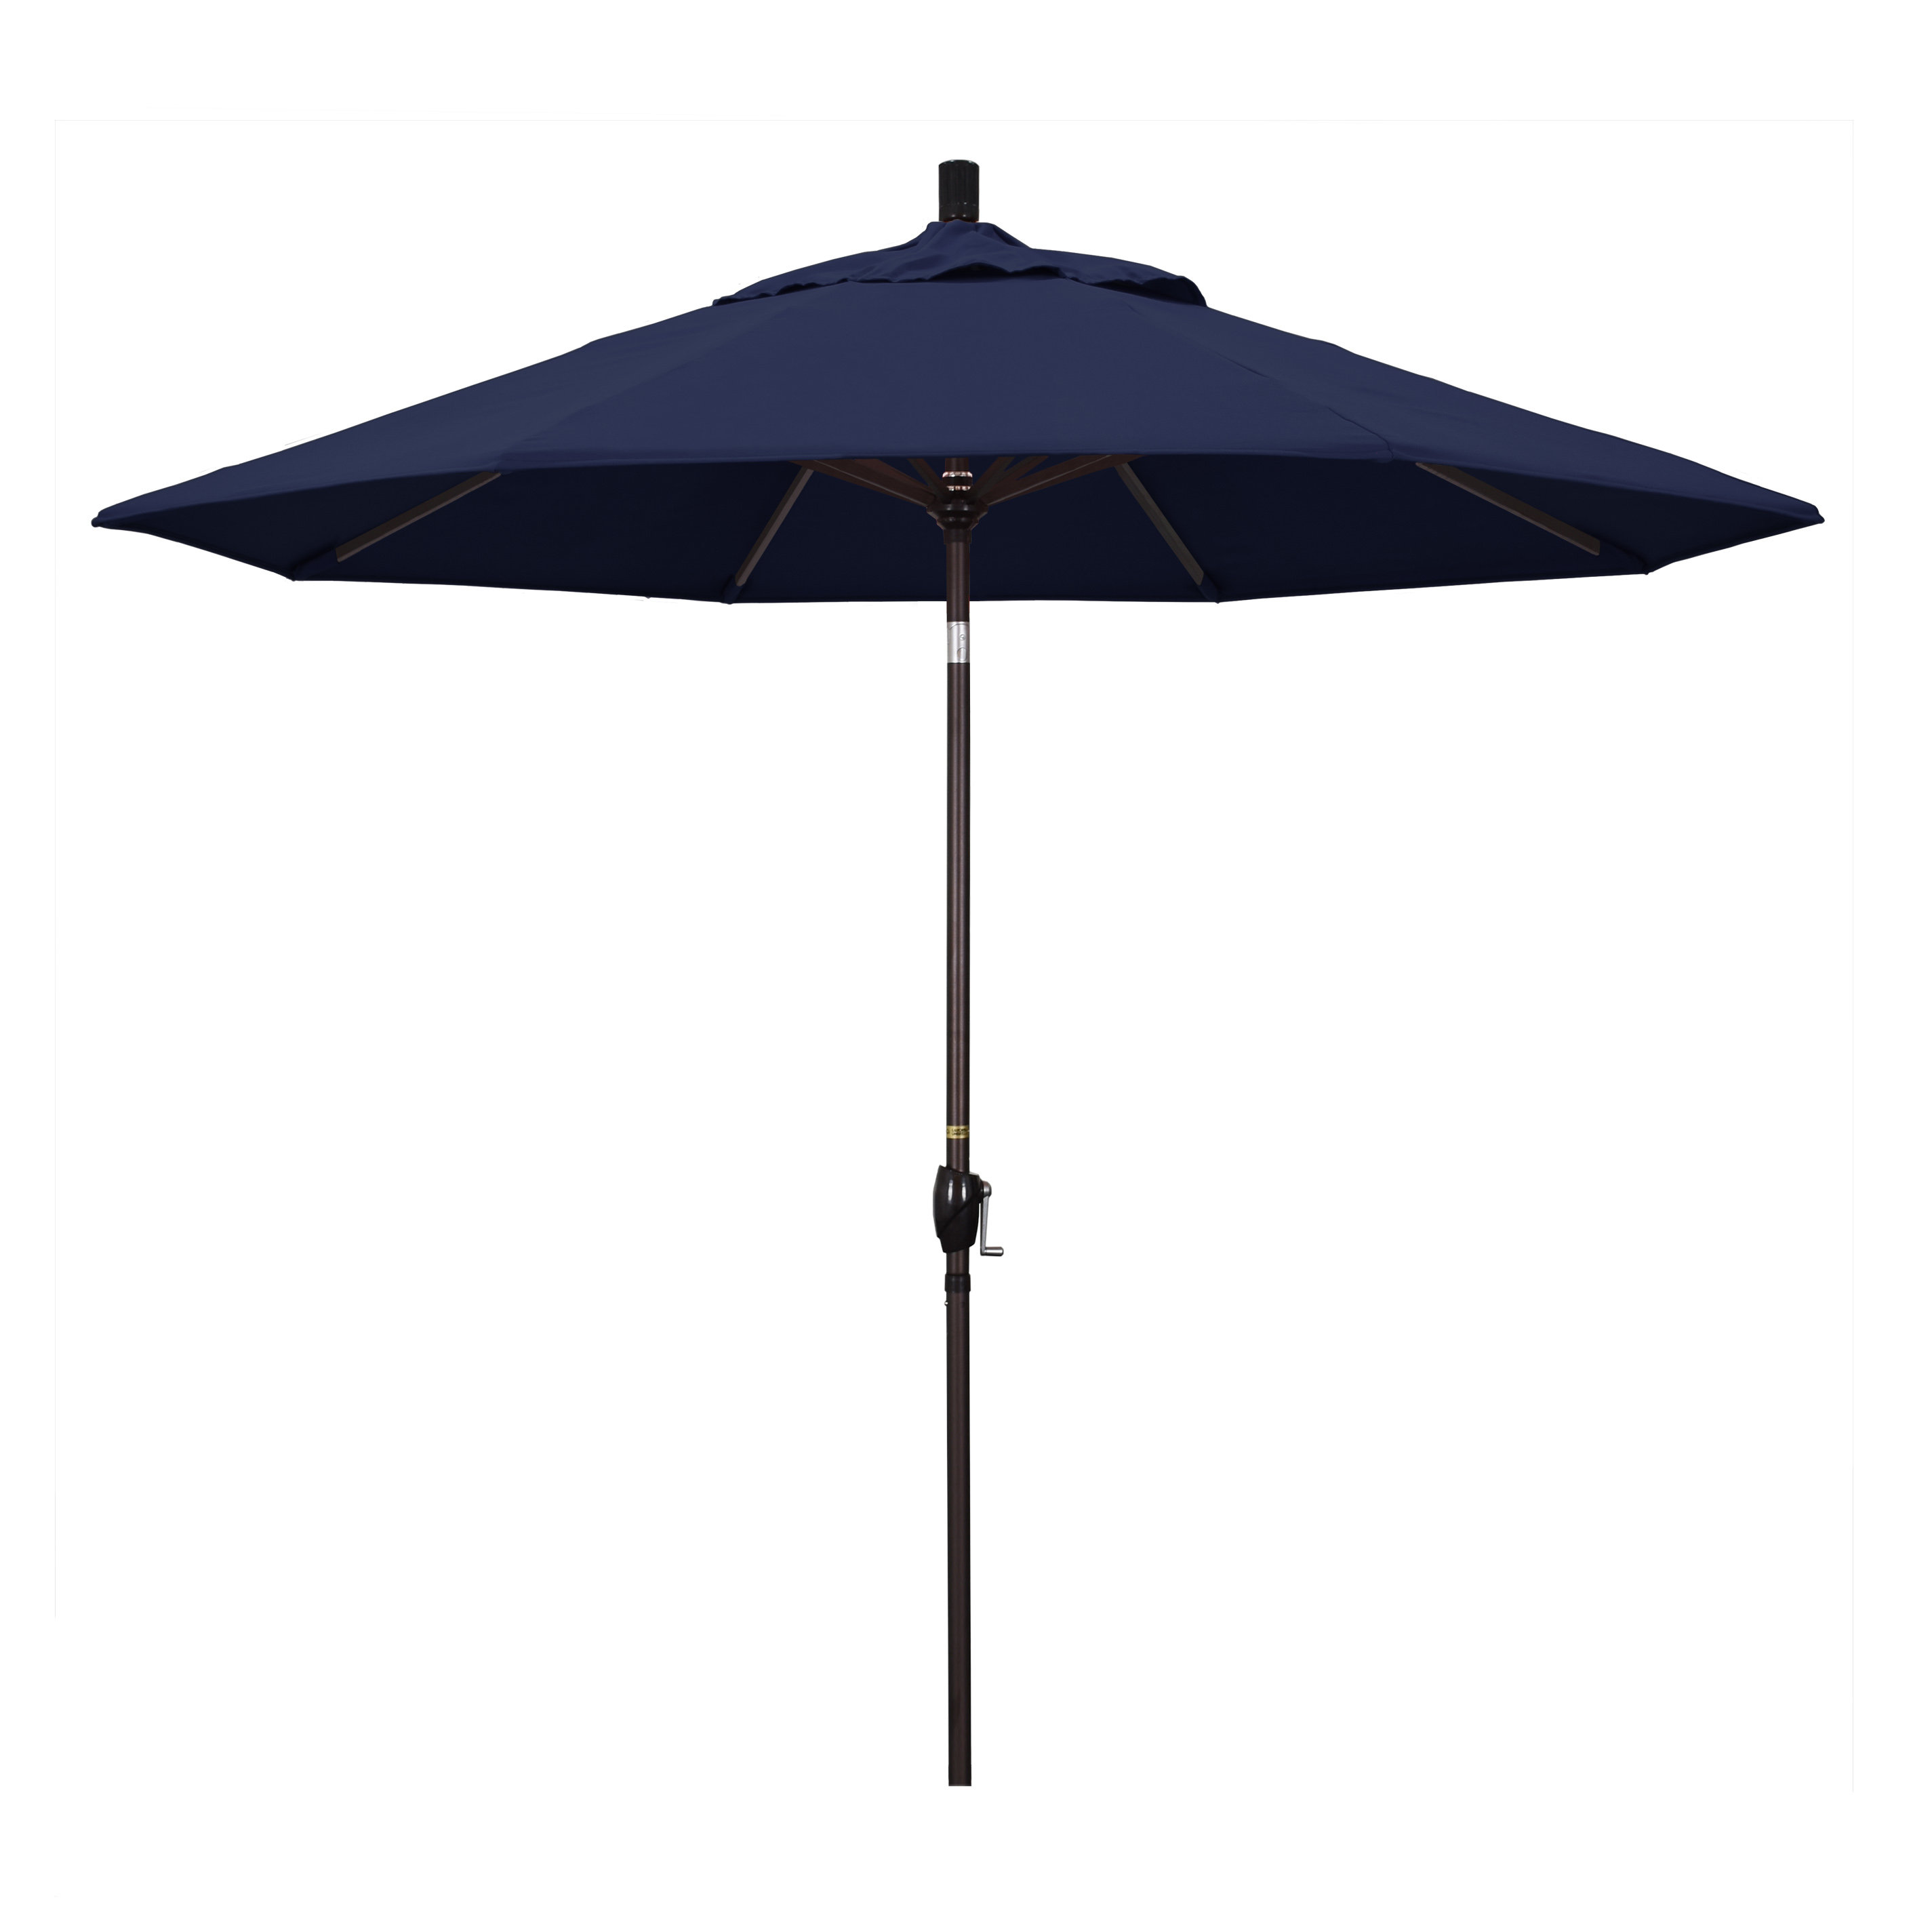 Darby Home Co Iuka 9' Market Umbrella & Reviews | Wayfair